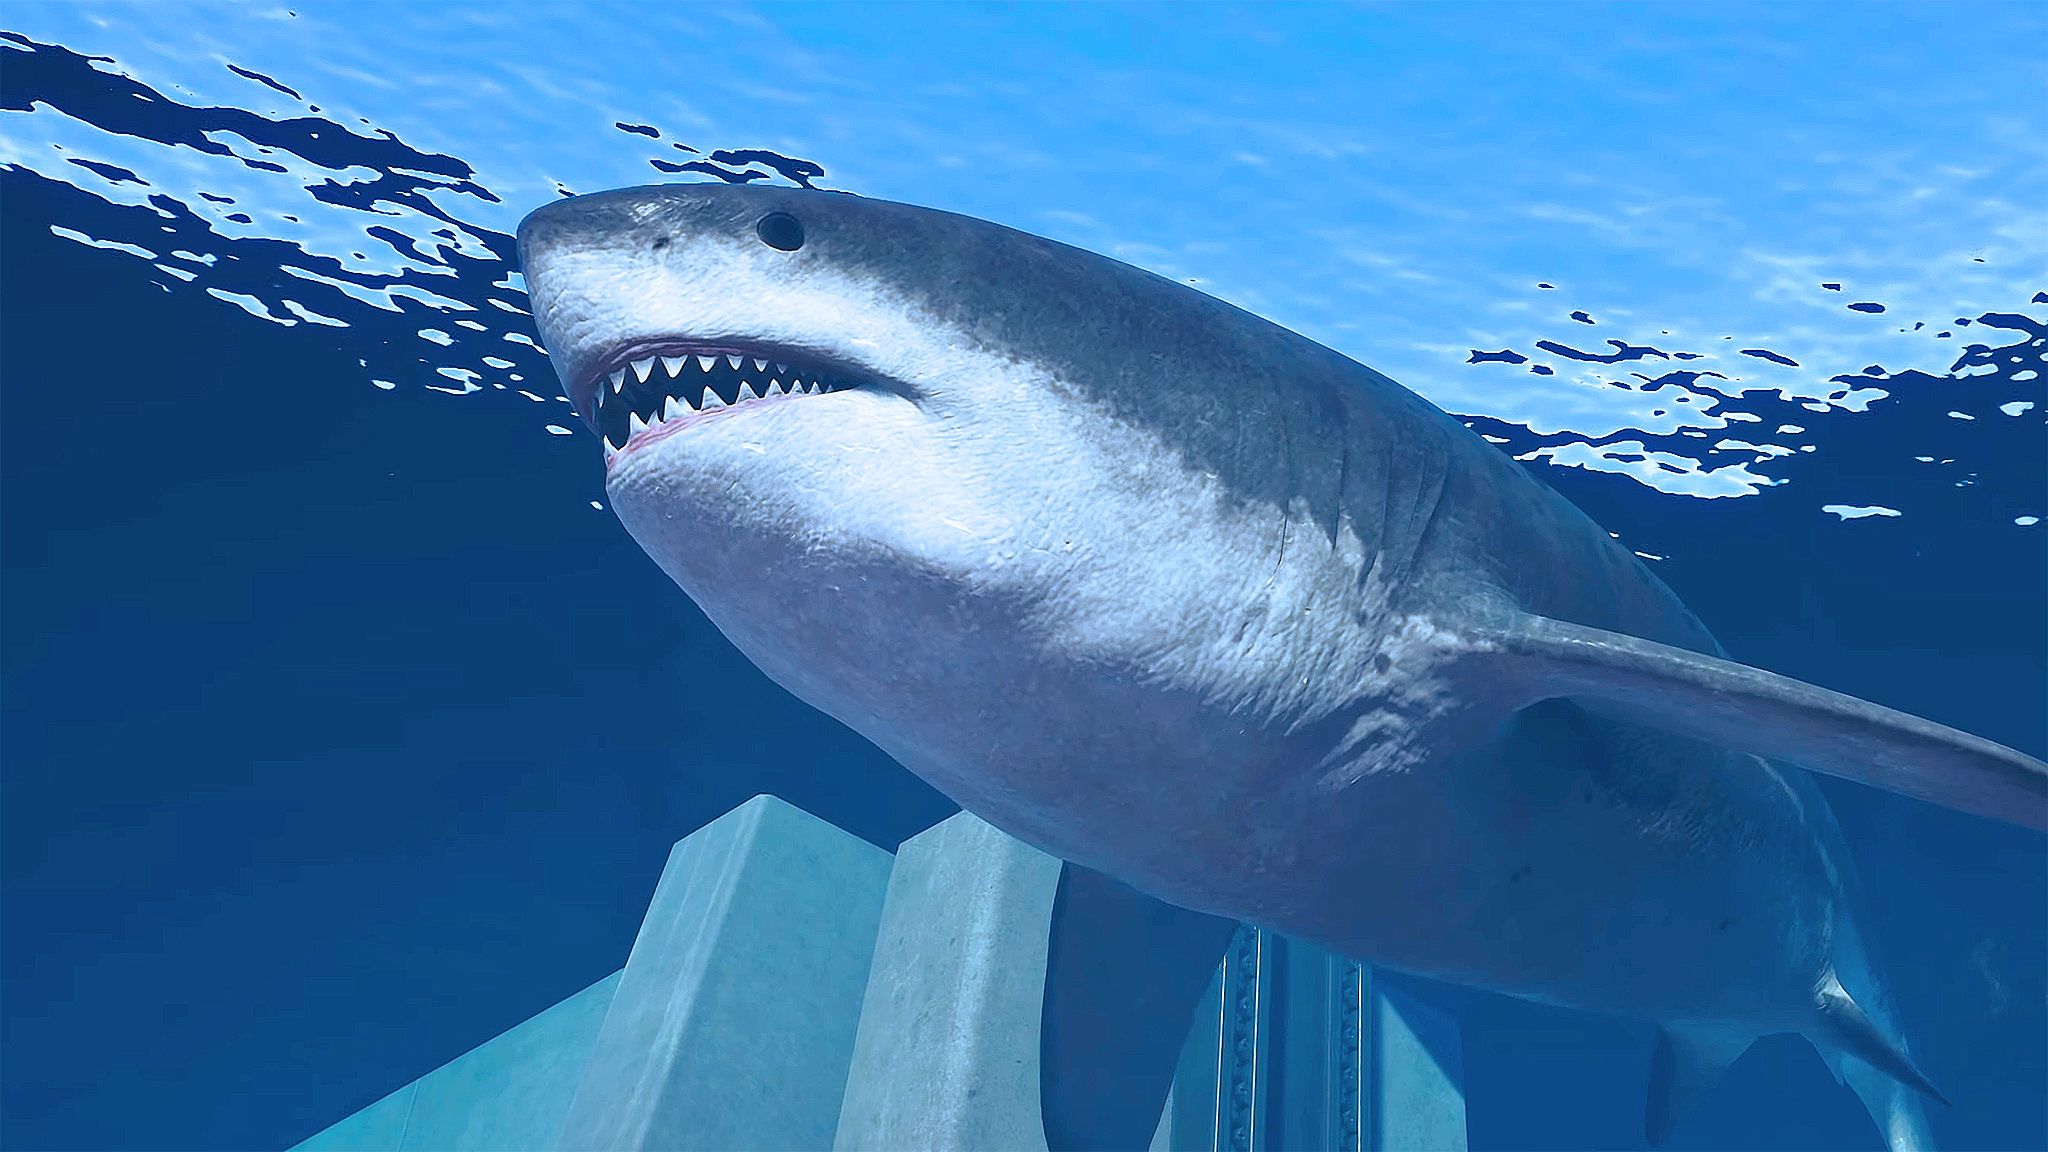 巨齿鲨,沧龙,隐藏在深渊中的巨灵—游戏:侏罗纪世界进化